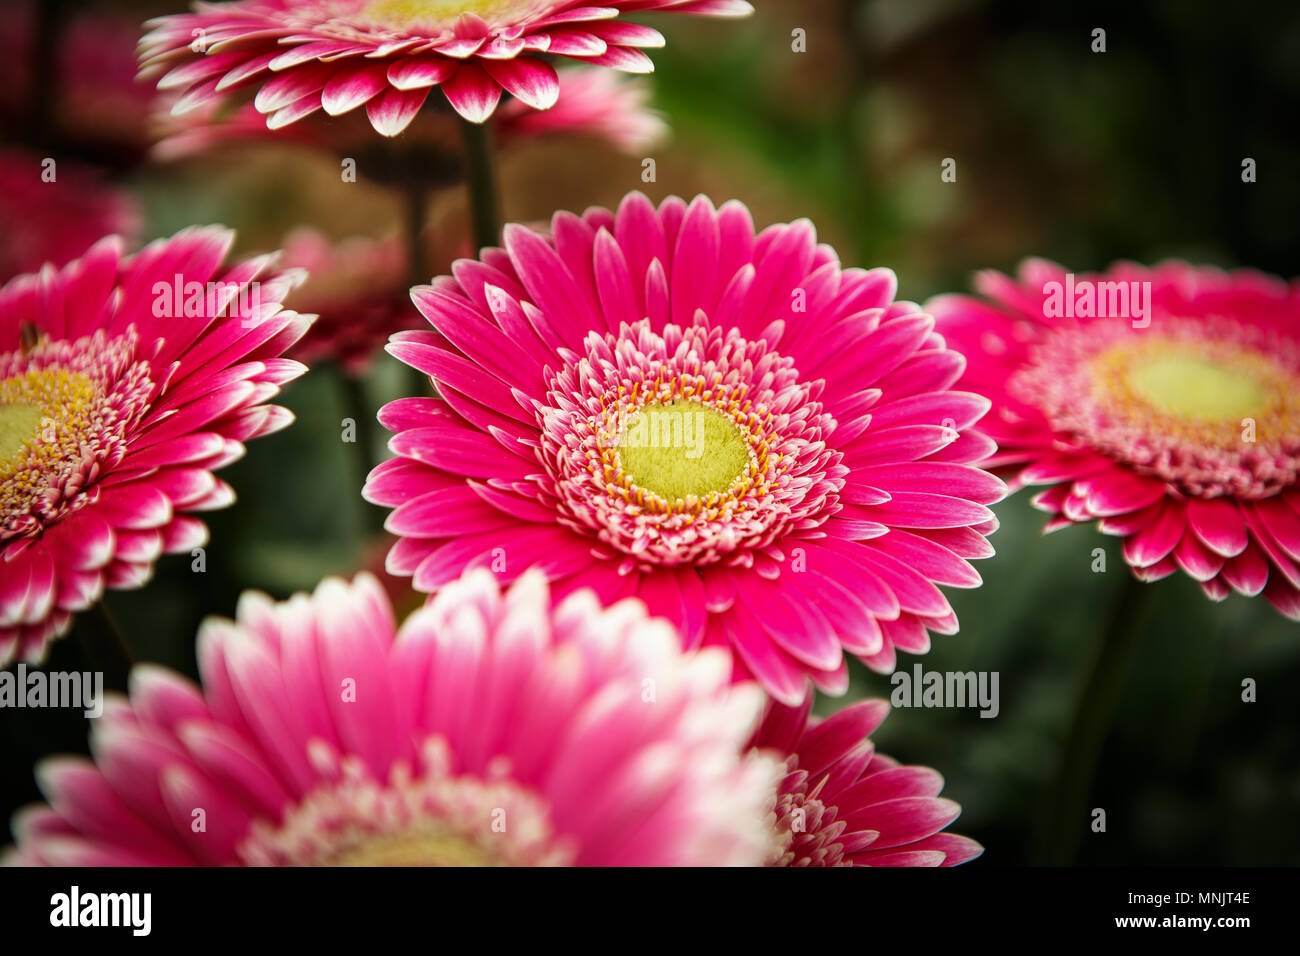 Schöne bunte Rosa transvaal Gänseblümchen Blumen blühen im Frühling Garten.  dekorative Tapete mit gerbera Blume Blüte im Frühling. Schönheit der Natu  Stockfotografie - Alamy